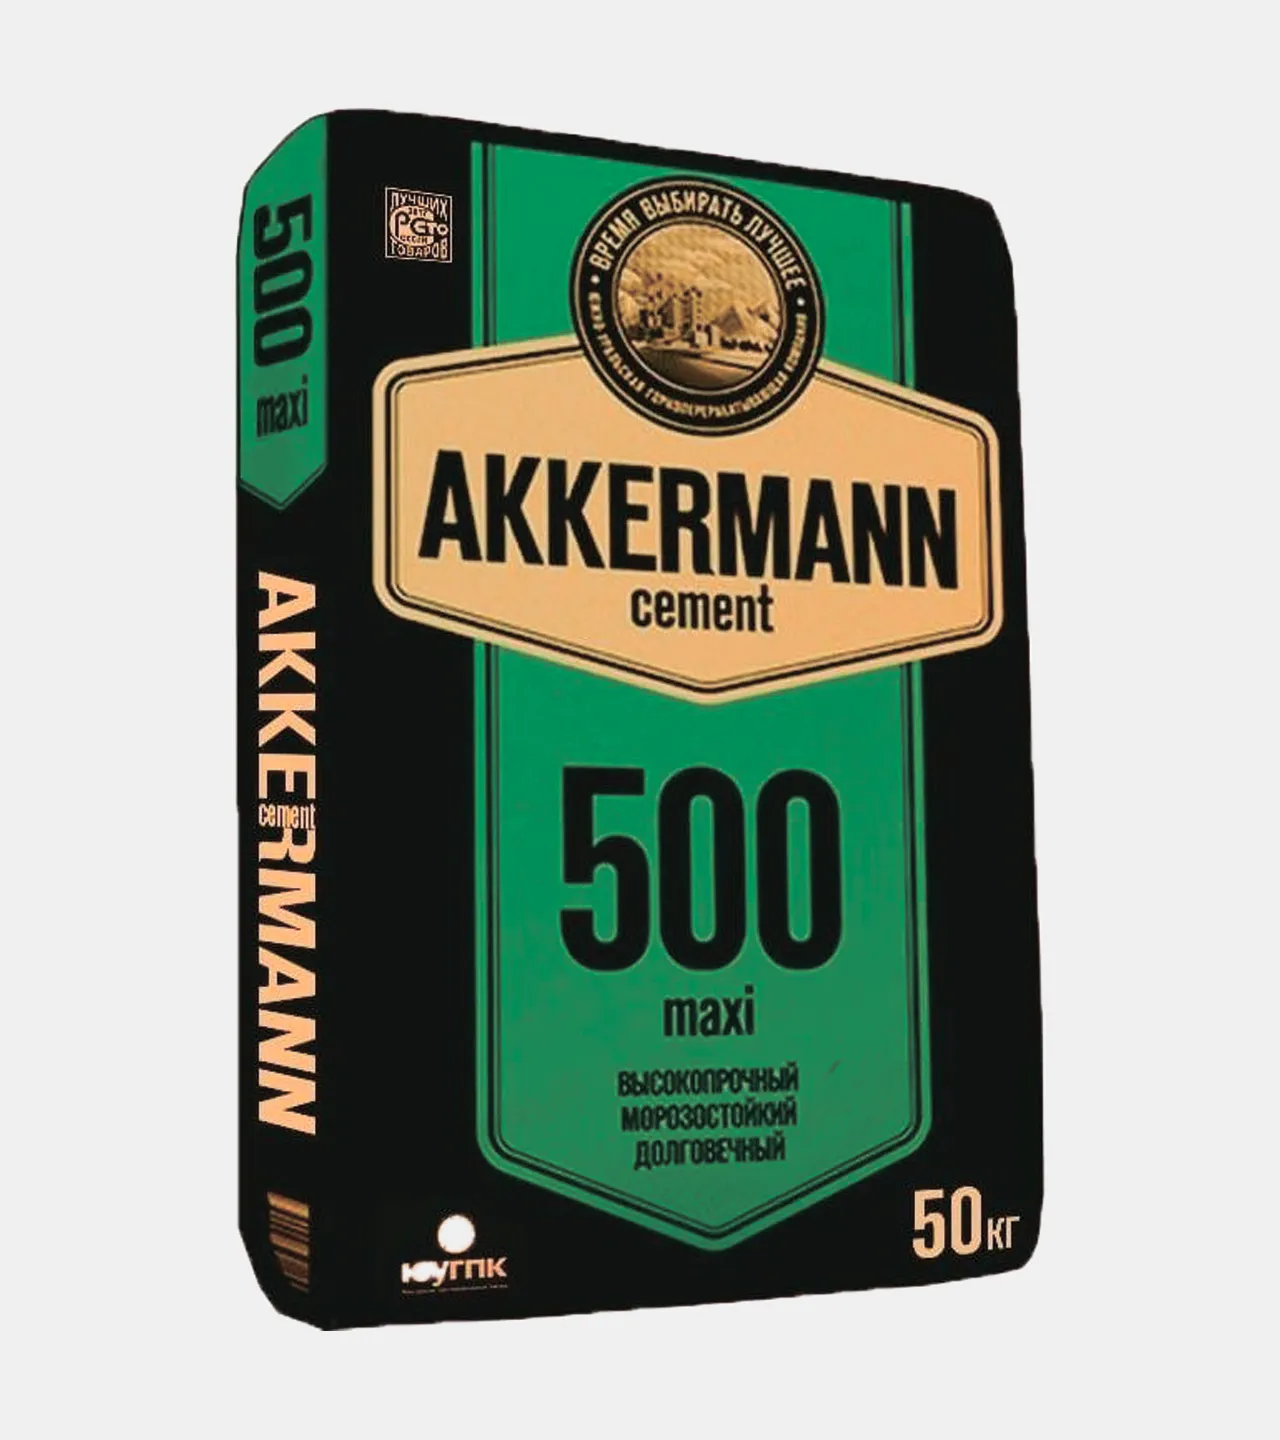 Akkerman sement 500M#1